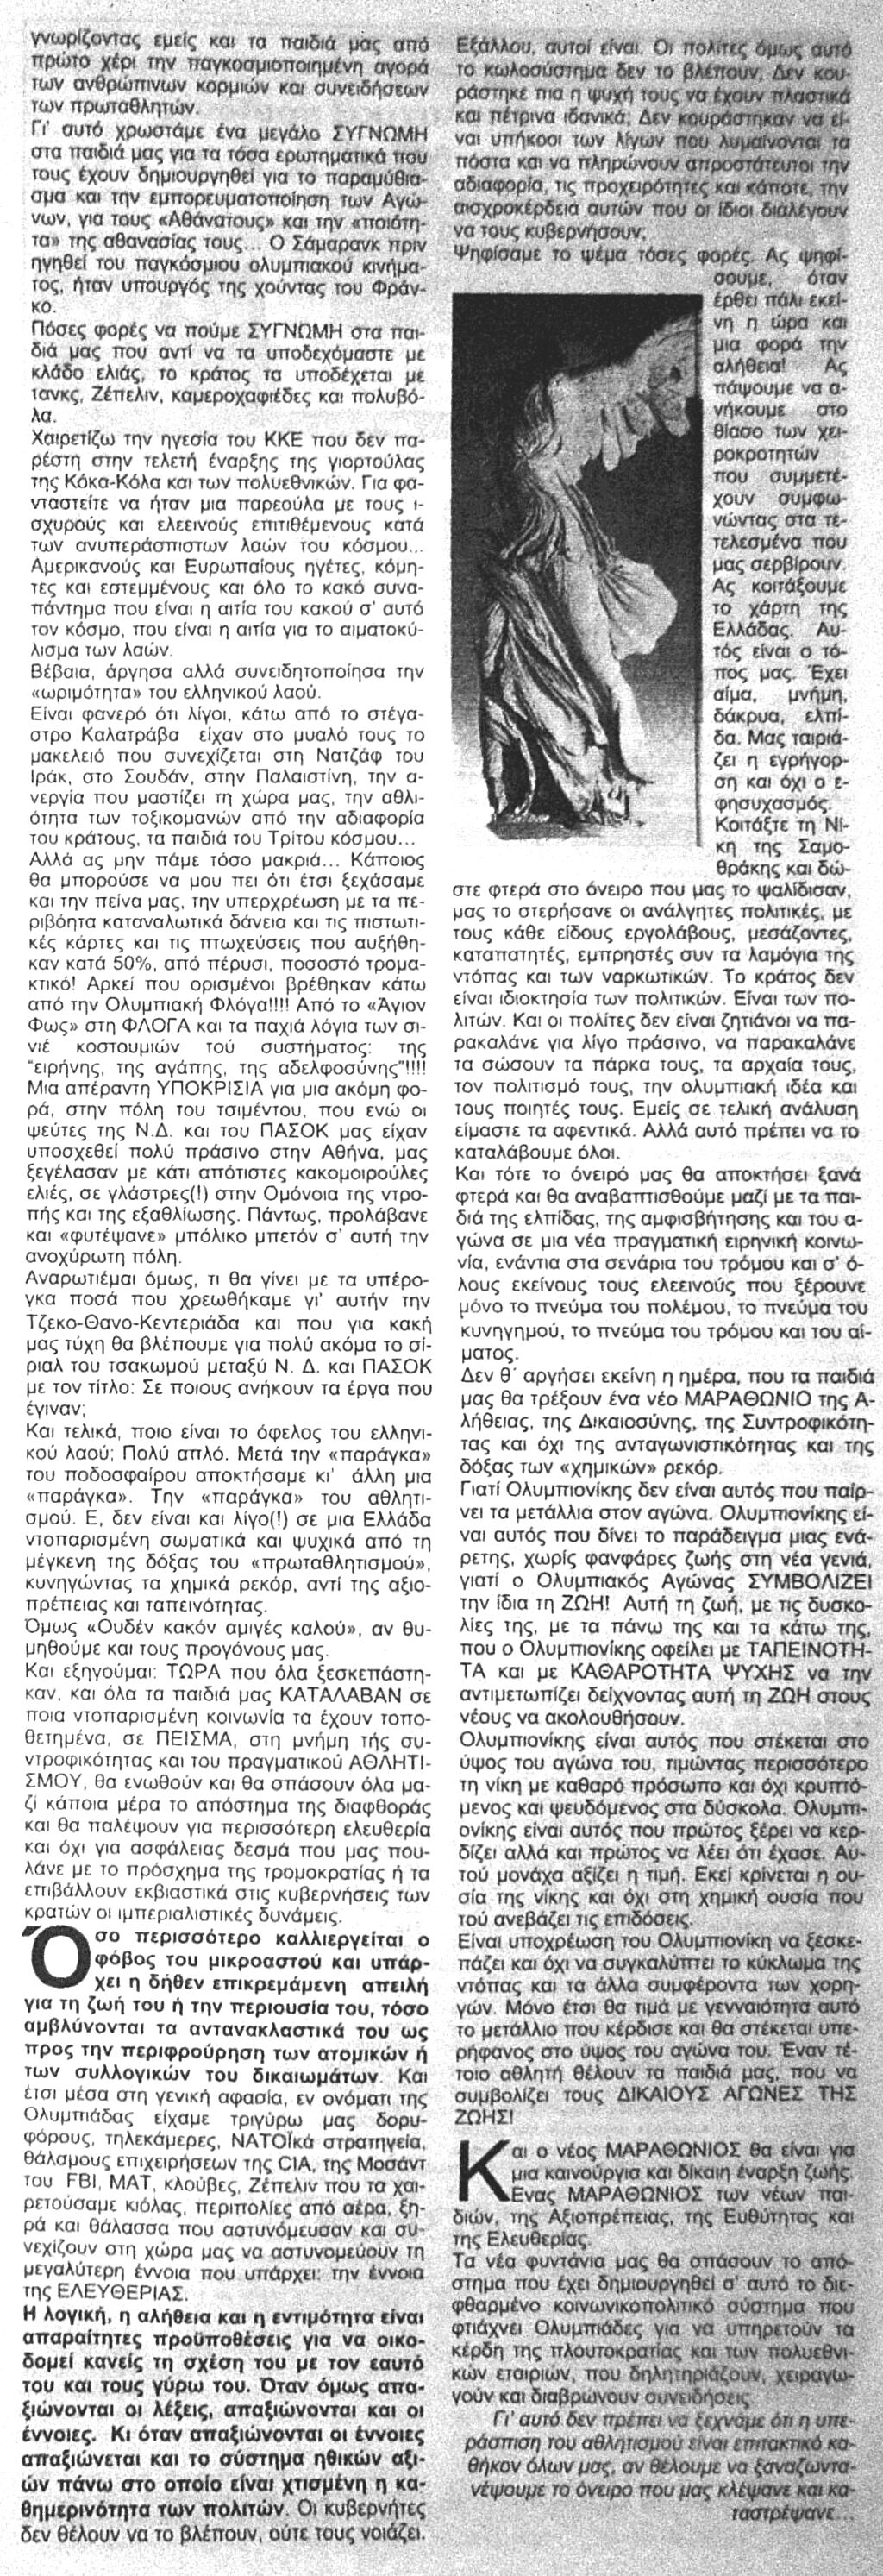 Η Ρένα και η παράγκα - Φύλλο 220 - Εφημερίδα Αιγάλεω Dsc05759